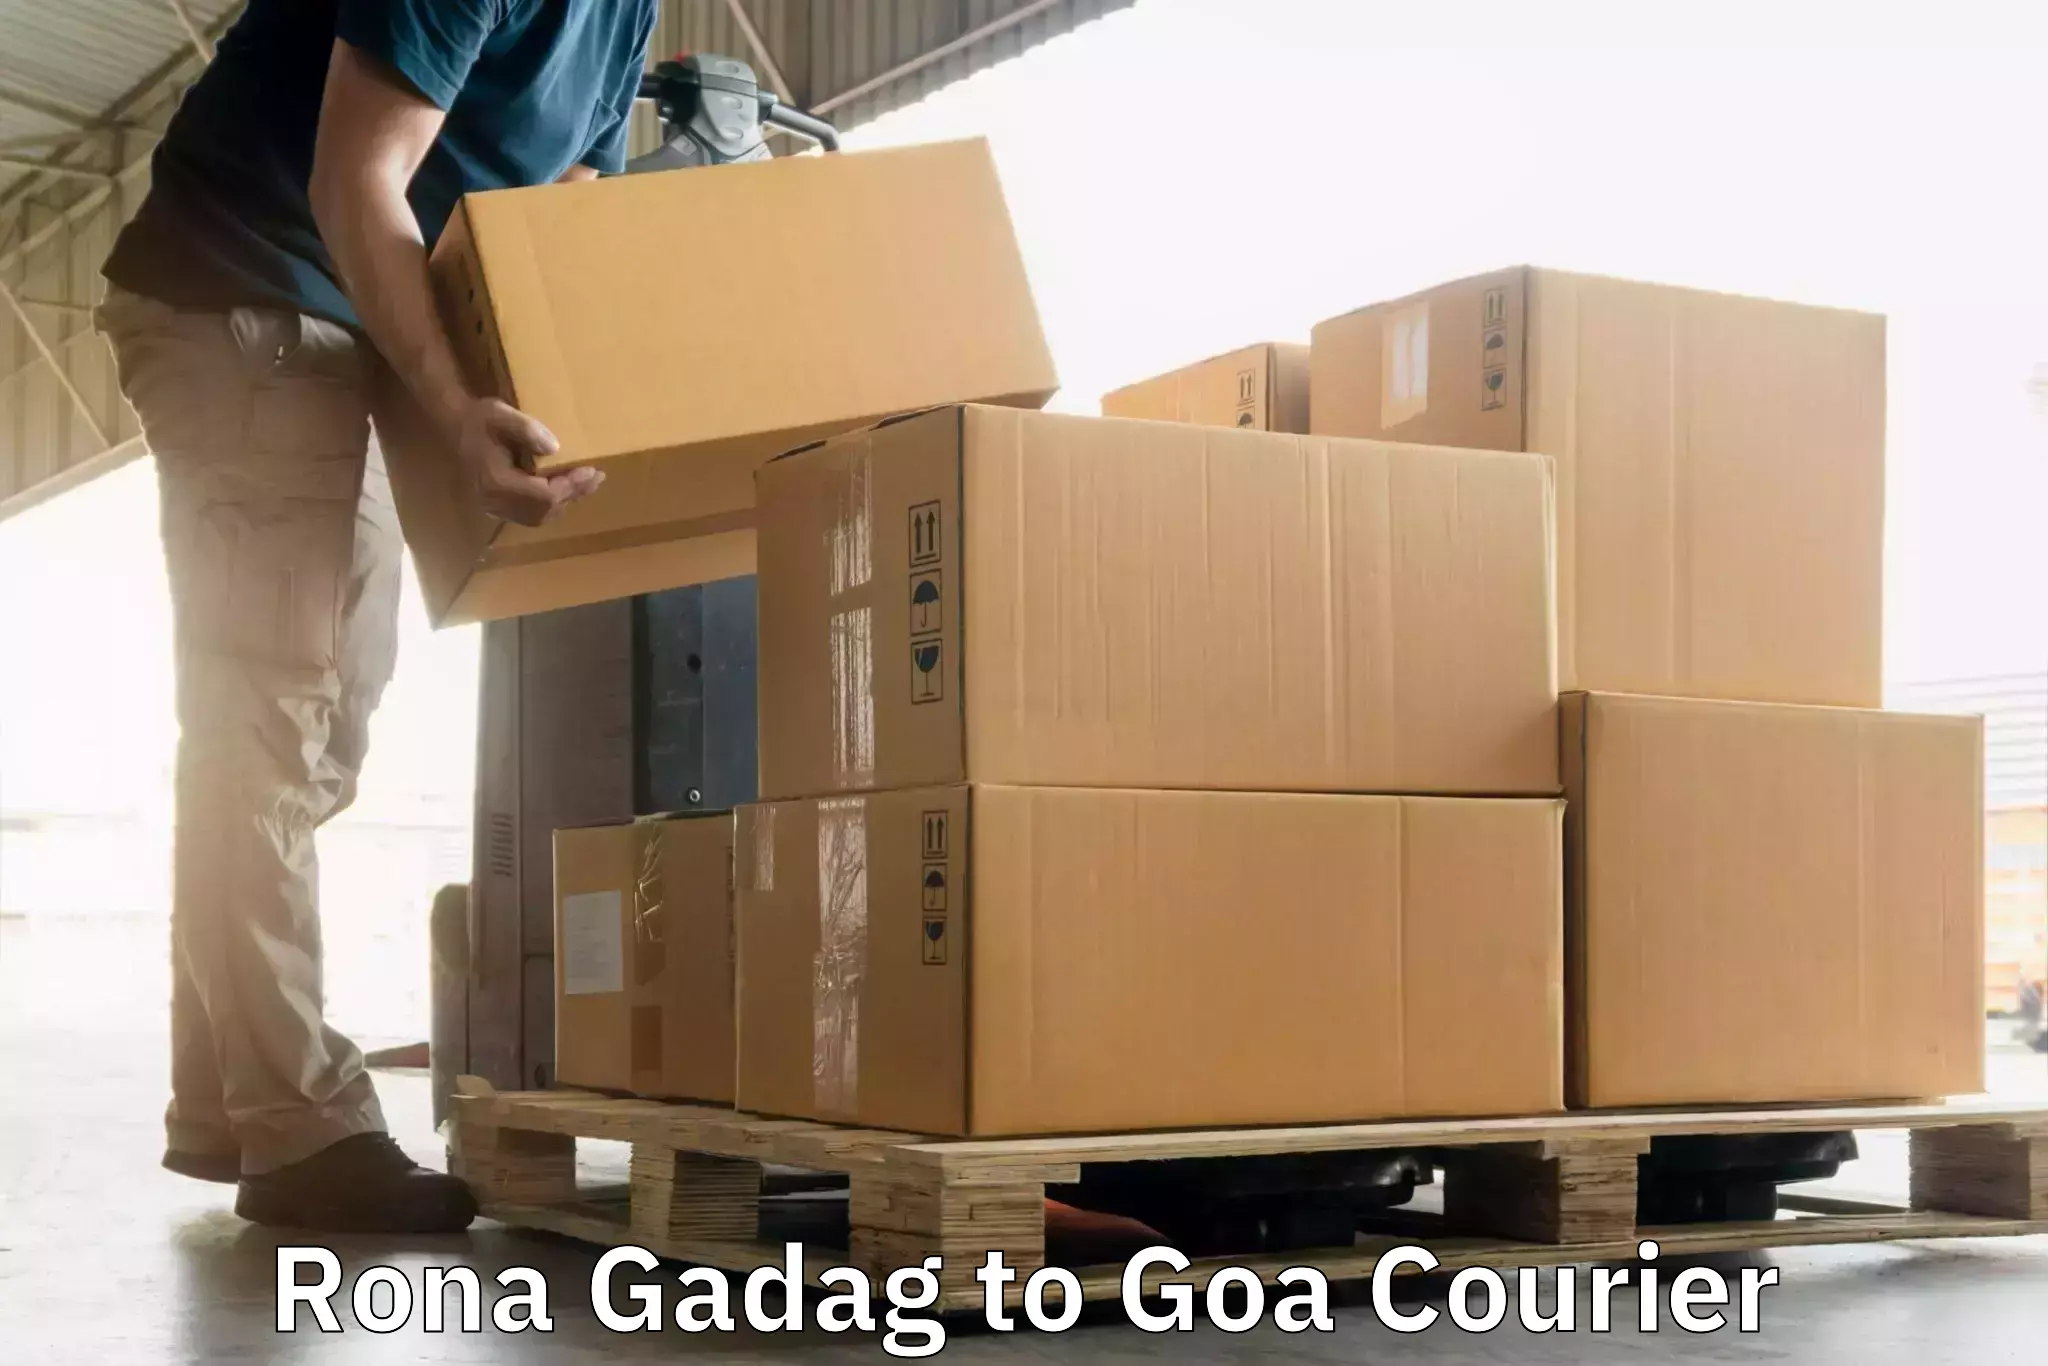 Express postal services Rona Gadag to IIT Goa